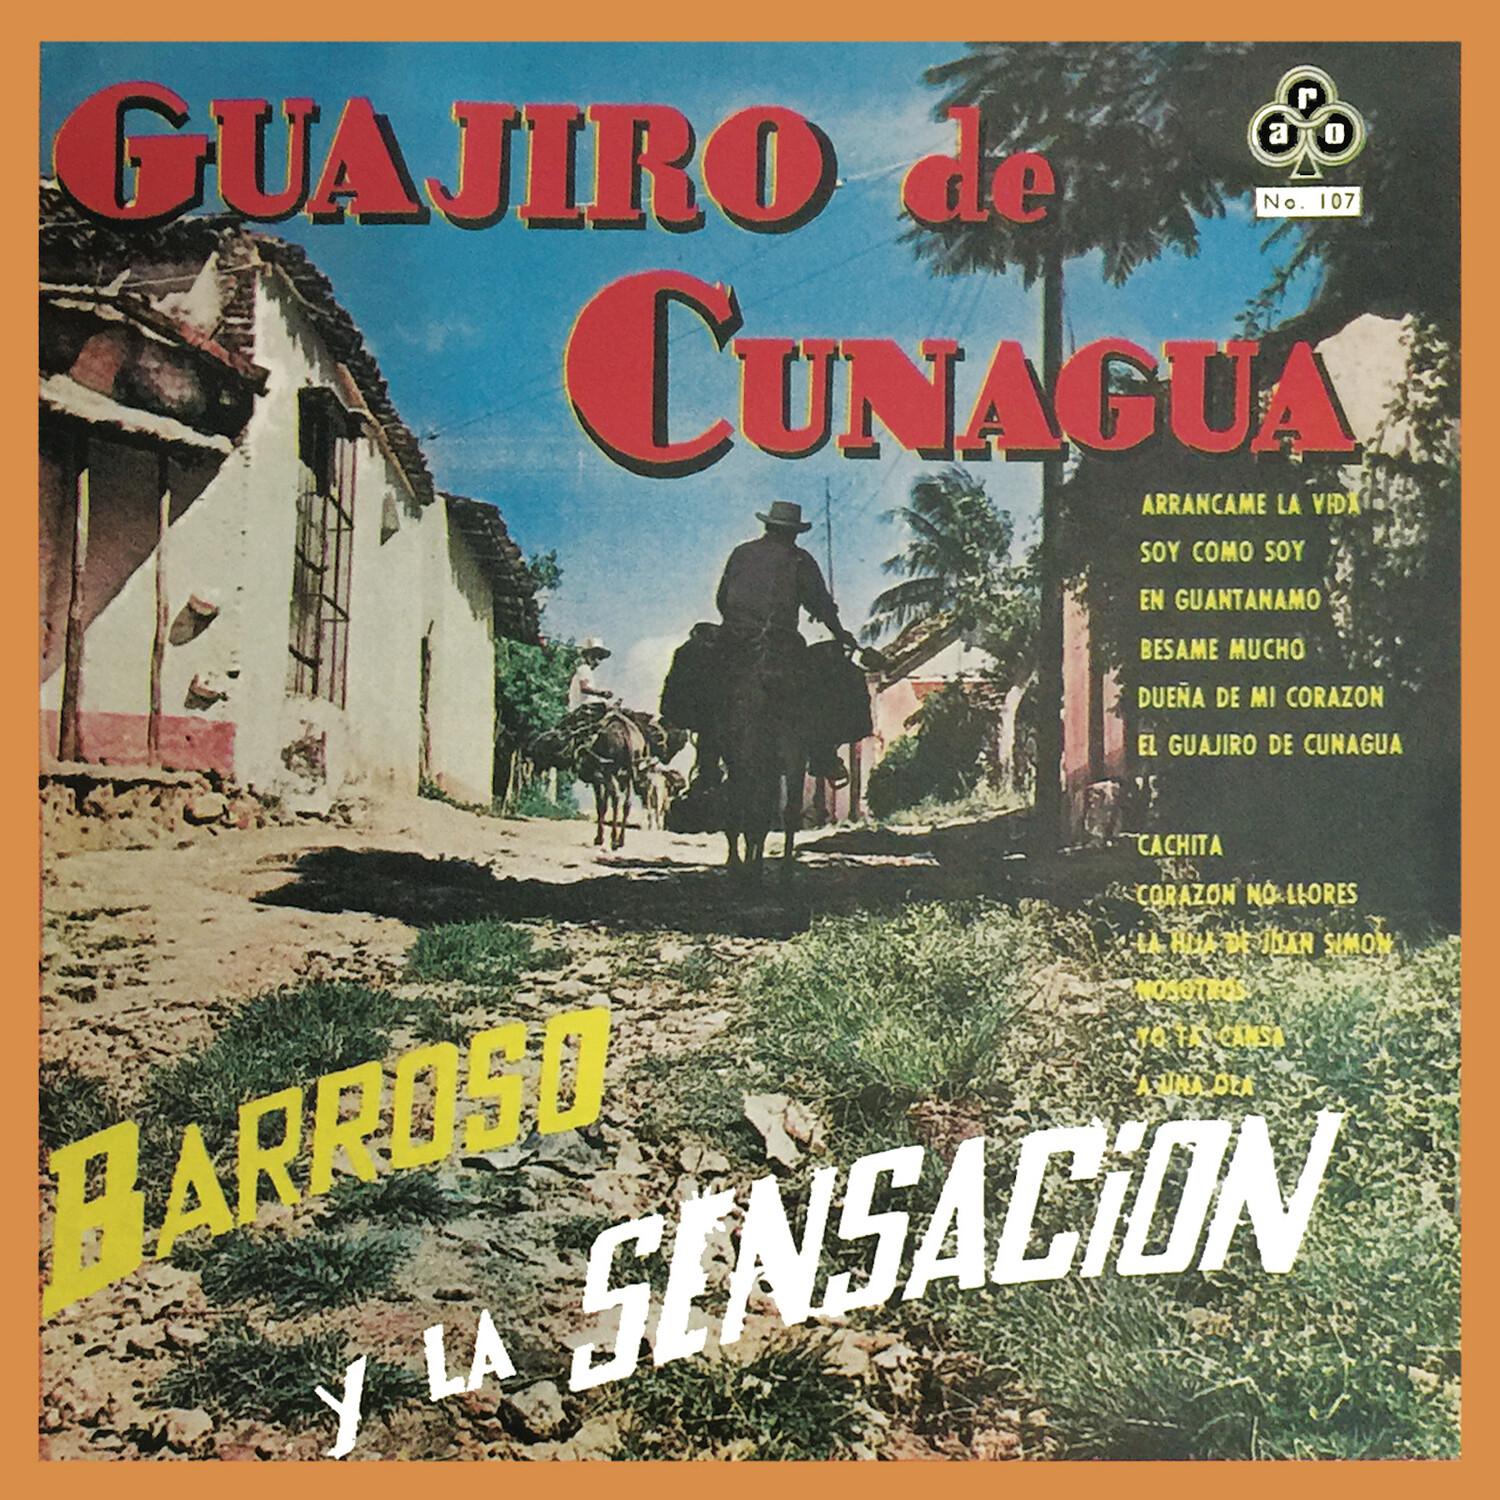 Guajiro de Cunagua